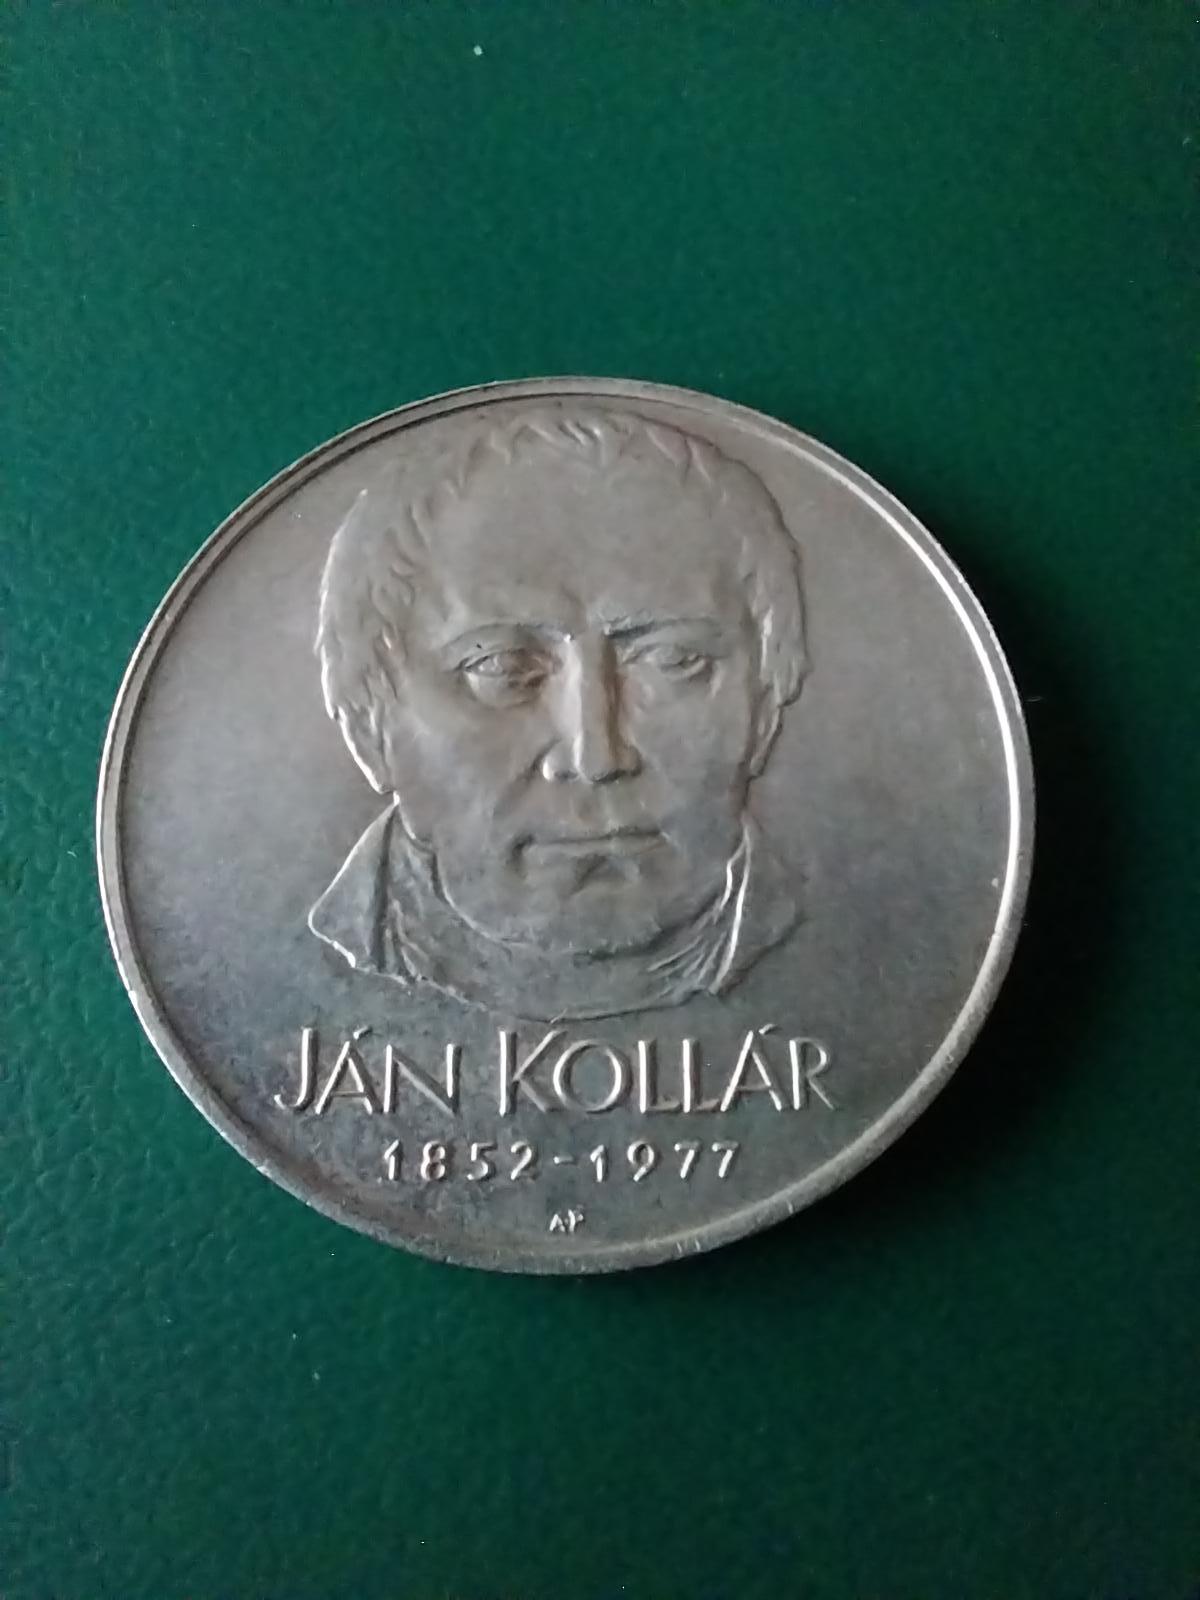 Strieborná pamätná minca 50 kčs 1977 Jan Kollár - Numizmatika